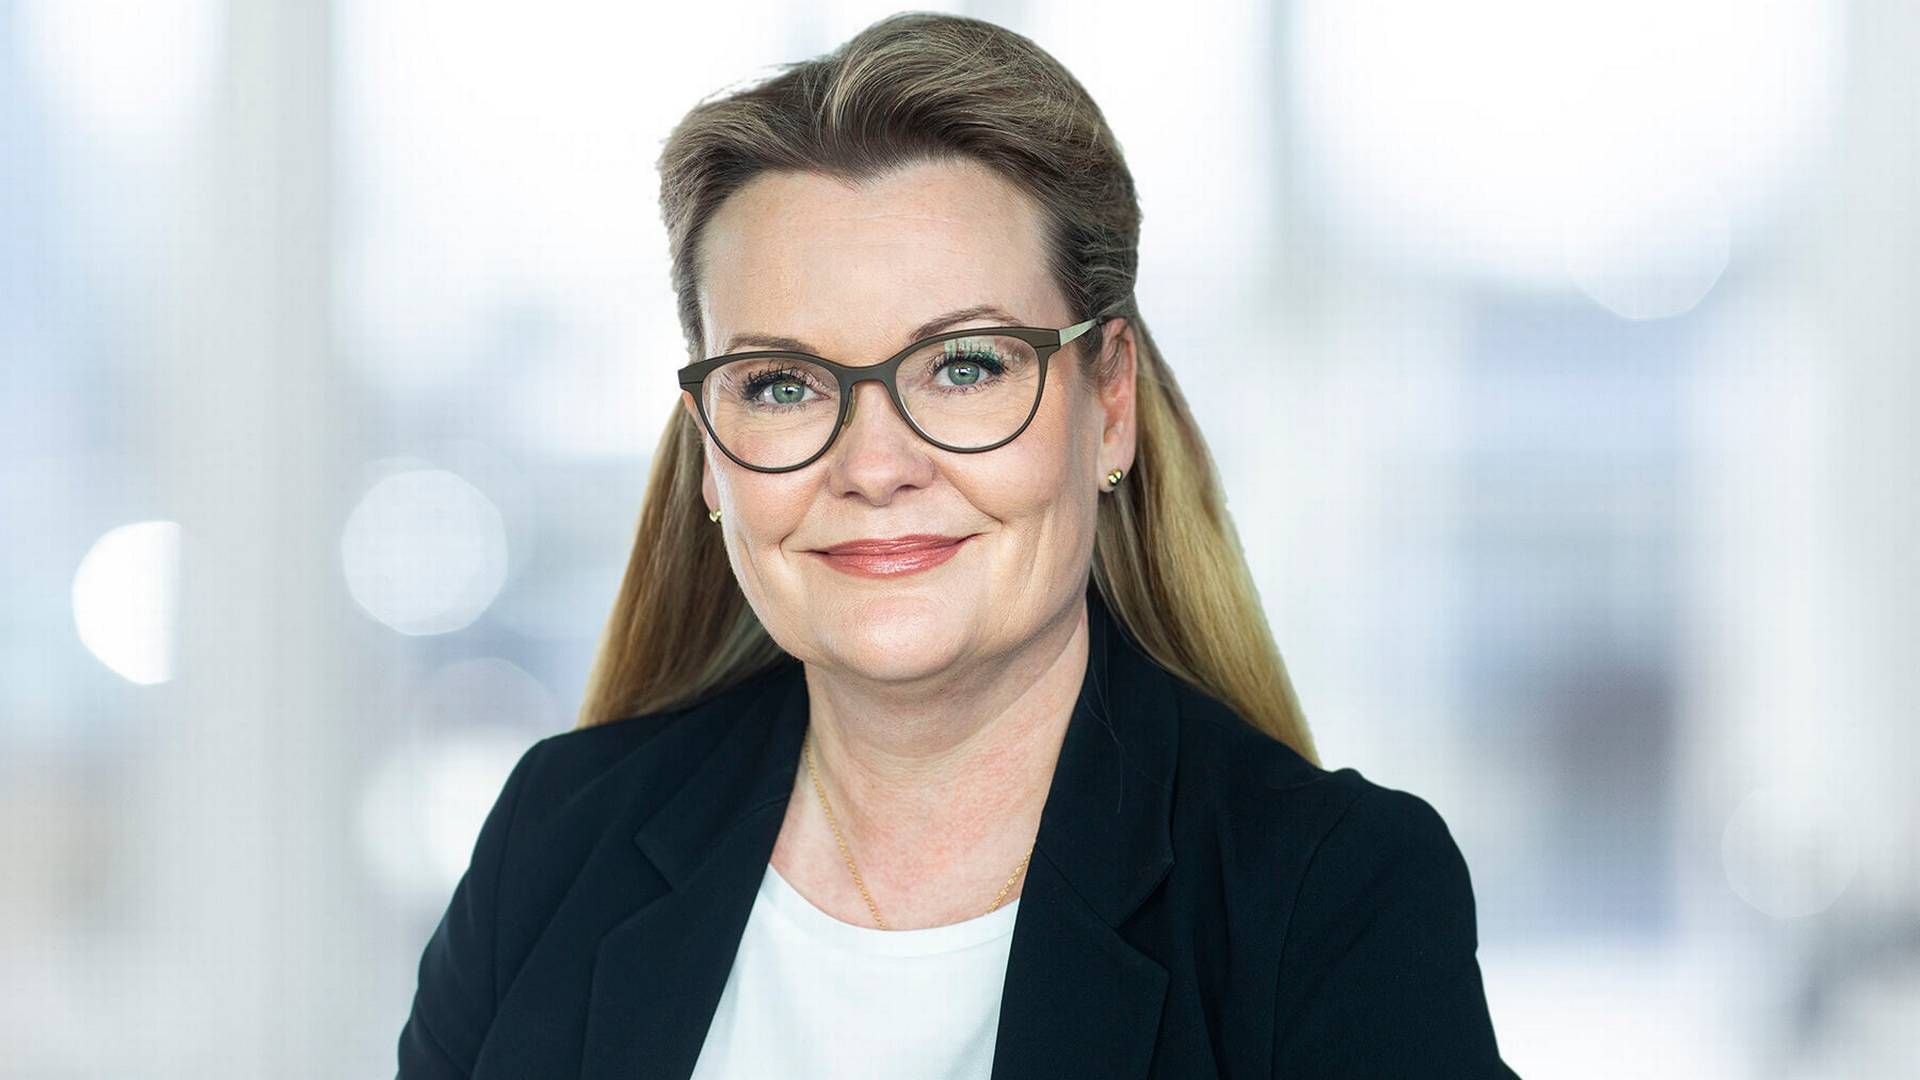 Mette Damgaard er uddannet jurist fra Aarhus Universitet i 2001 og har i løbet af karrieren arbejdet hos blandt andre Salling Group, Danish Crown og Carlsberg.